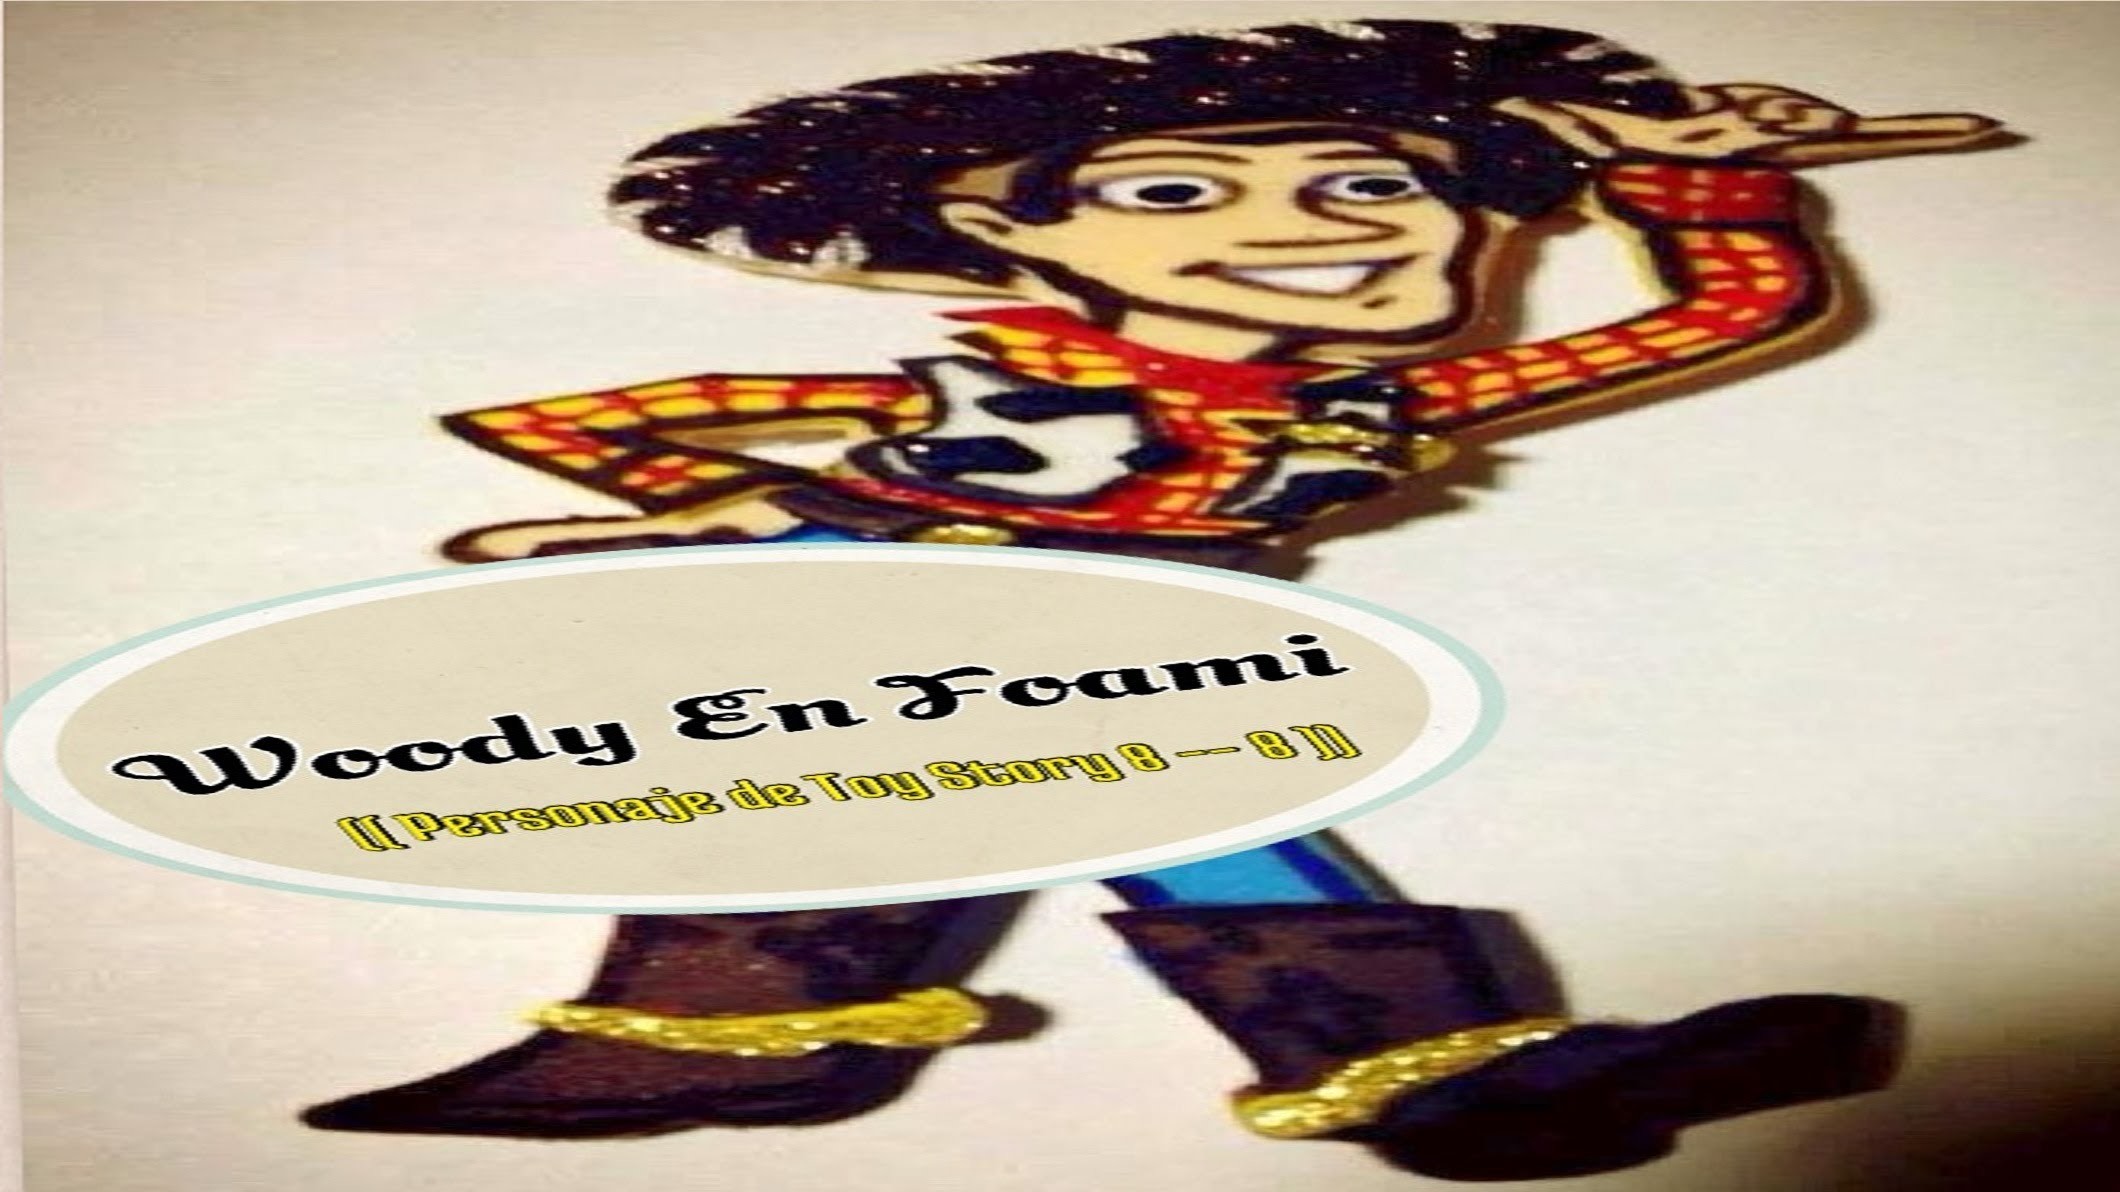 Woody En Foami (( Personaje De Toy Story 8 -- 8 ))